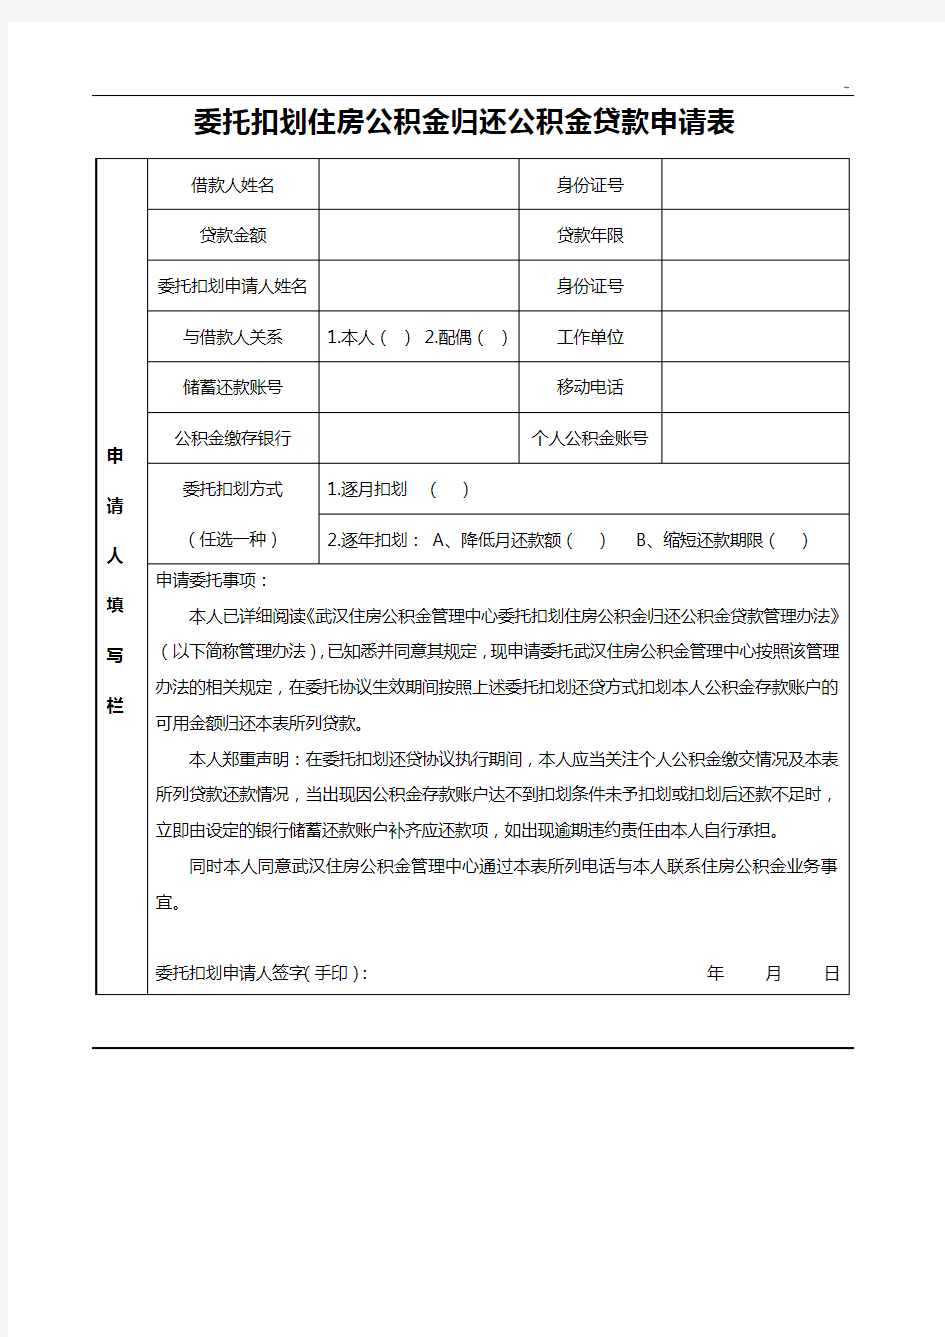 武汉市委托扣划住房公积金还公积金贷款申请表